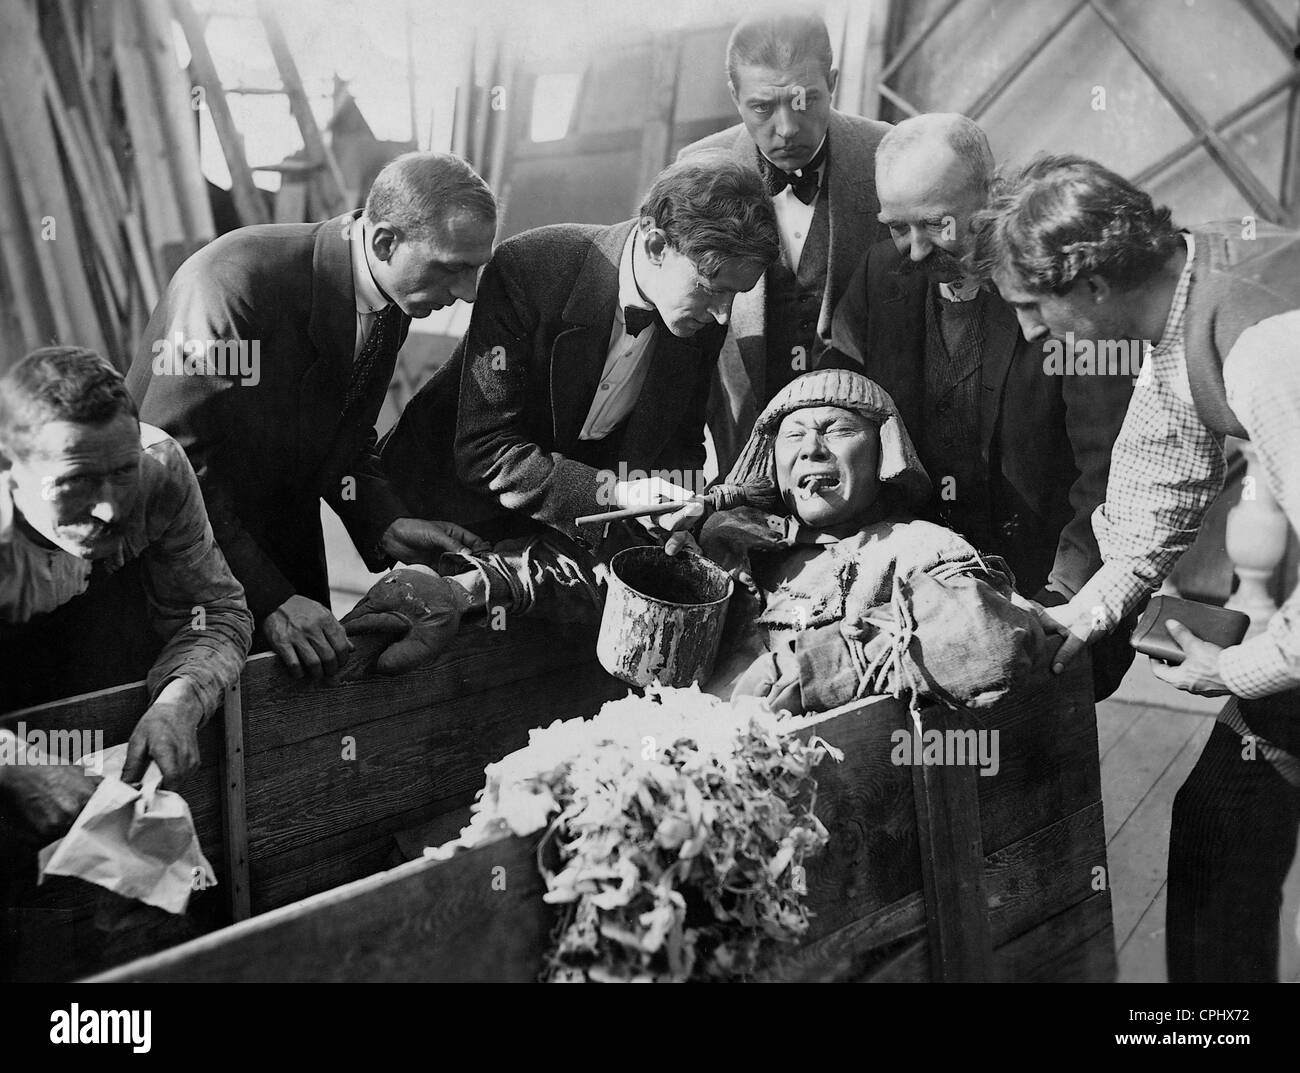 Paul Wegener als Golem während der Produktion von "Der Golem" (der Golem), Regie: Henrik Töchter/Paul Wegener, 1915. Stockfoto